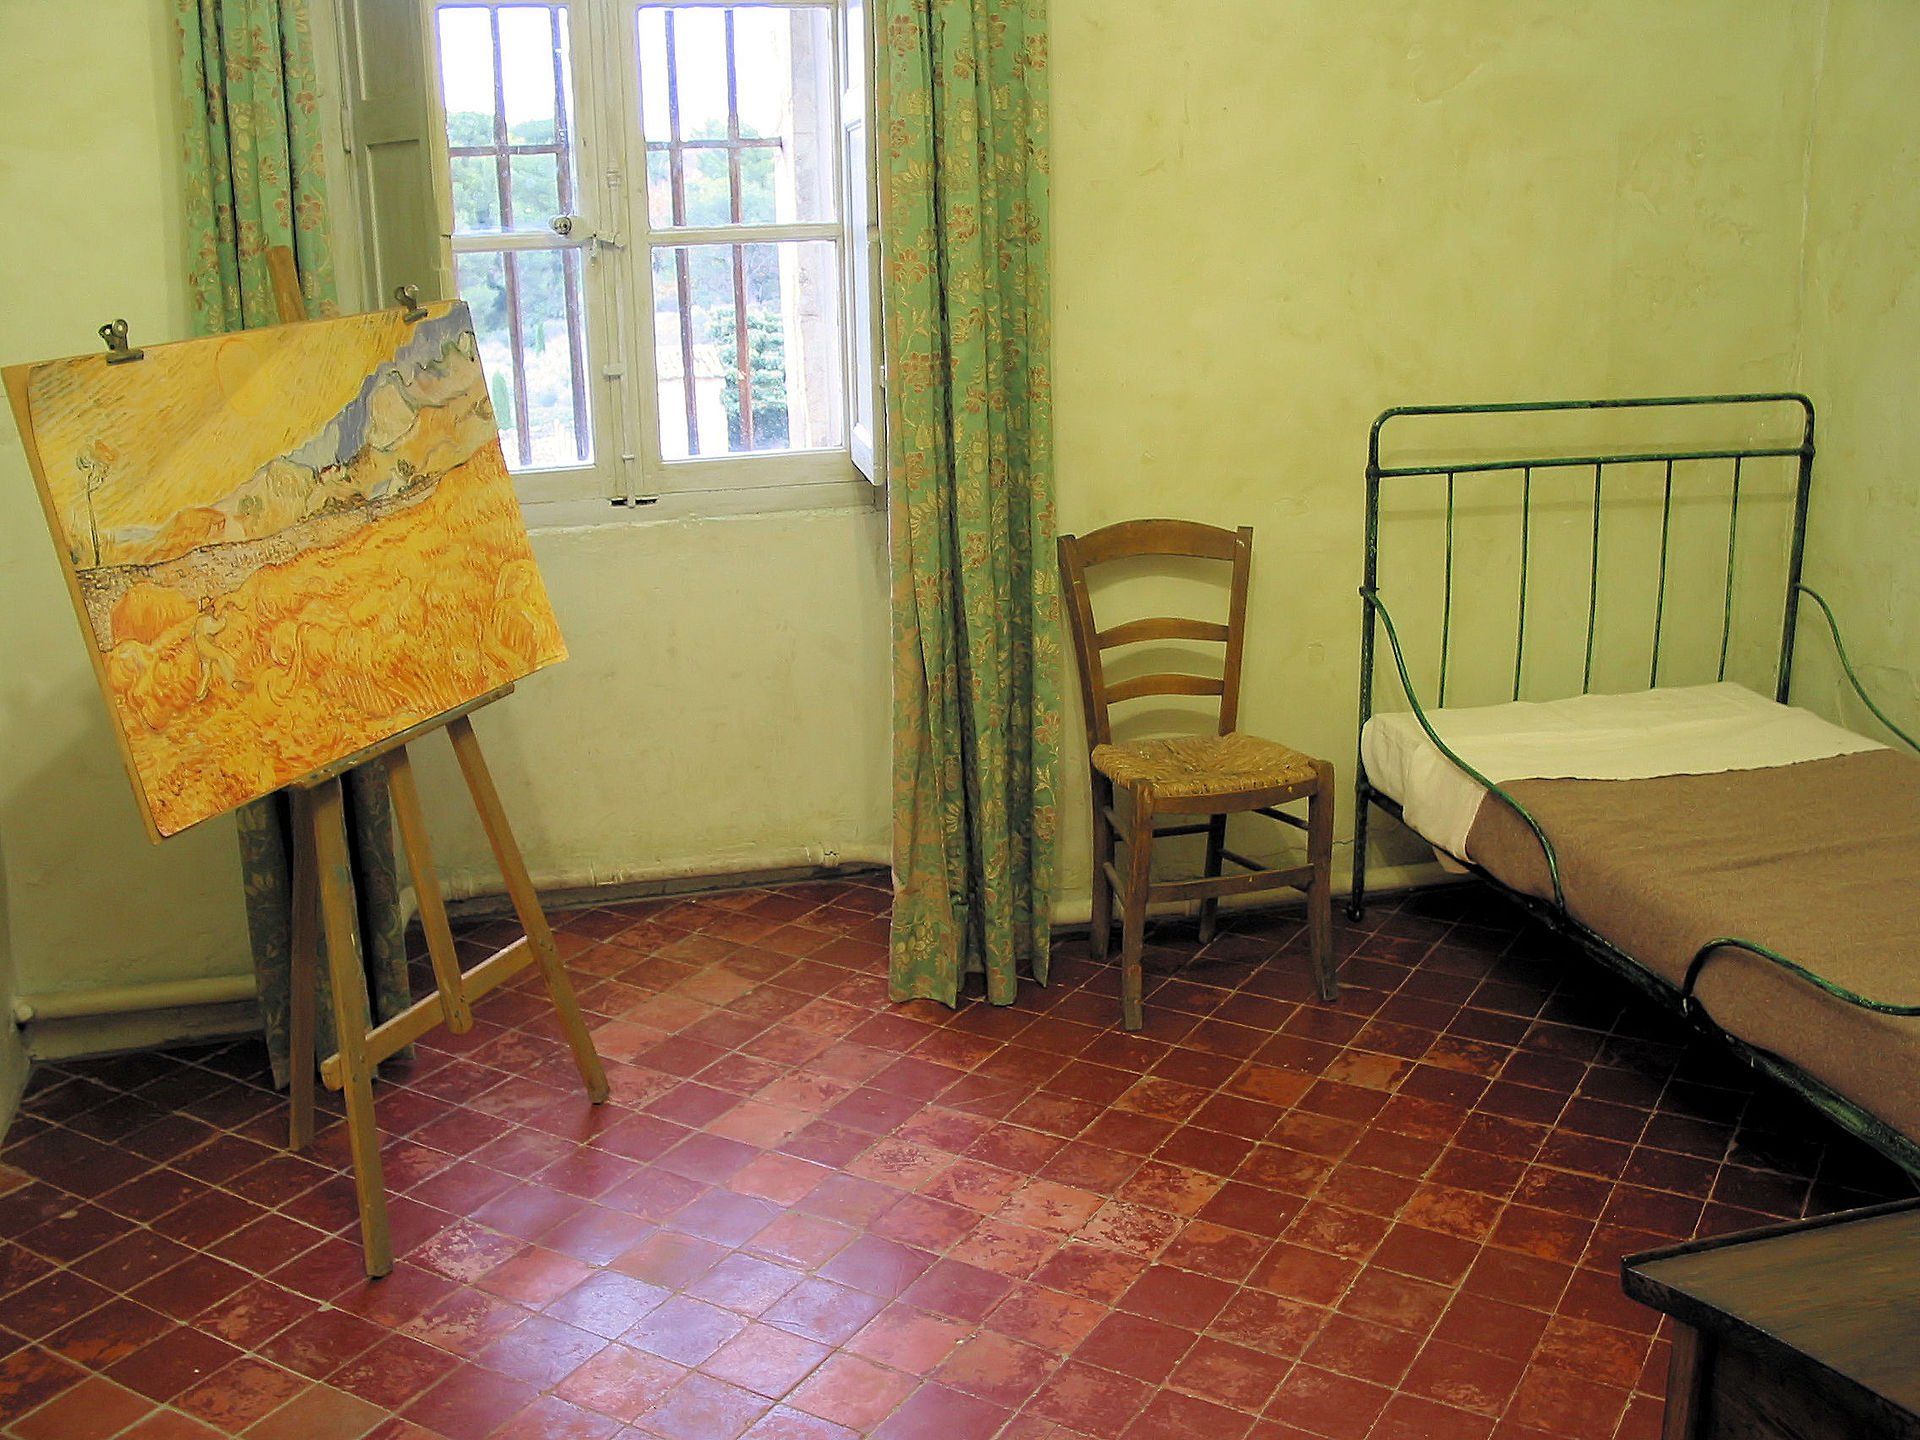 Vincent van Gogh's room in Saint-Paul de Mausole. Photo courtesy of Saint Rémy de Provence Tourisme